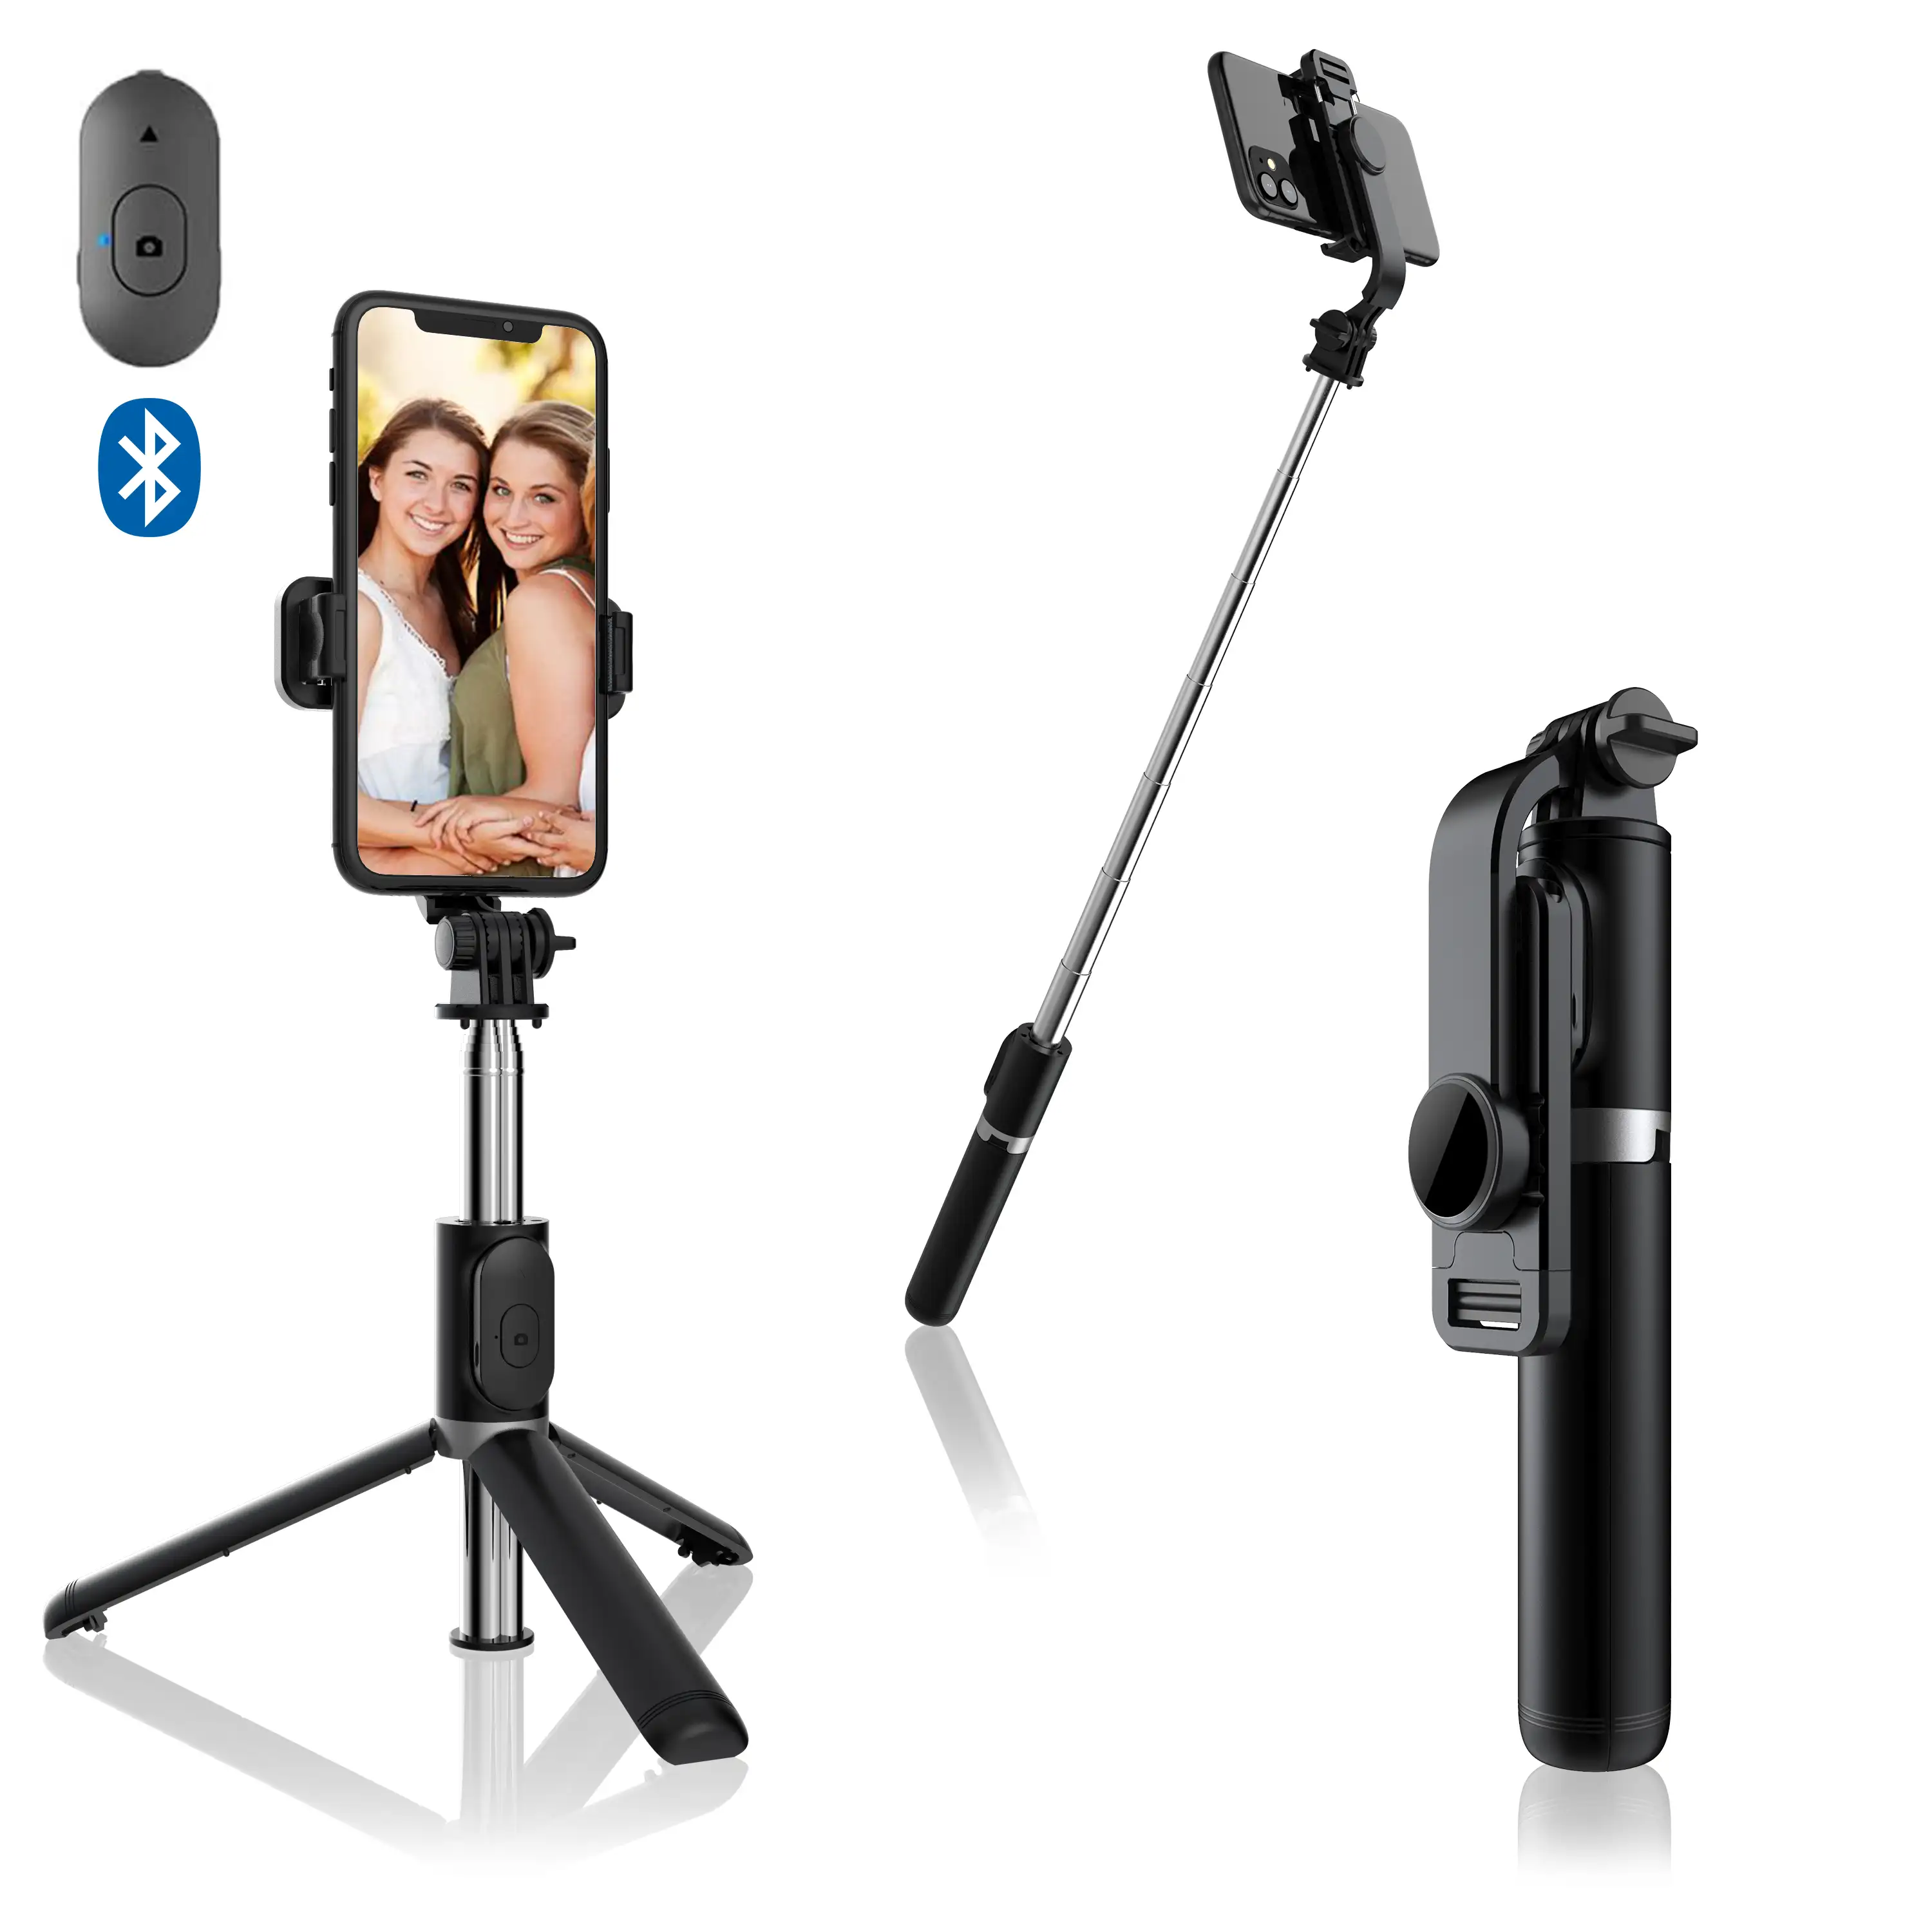 Palo selfie stick con trípode extensible y disparador remoto Bluetooth.